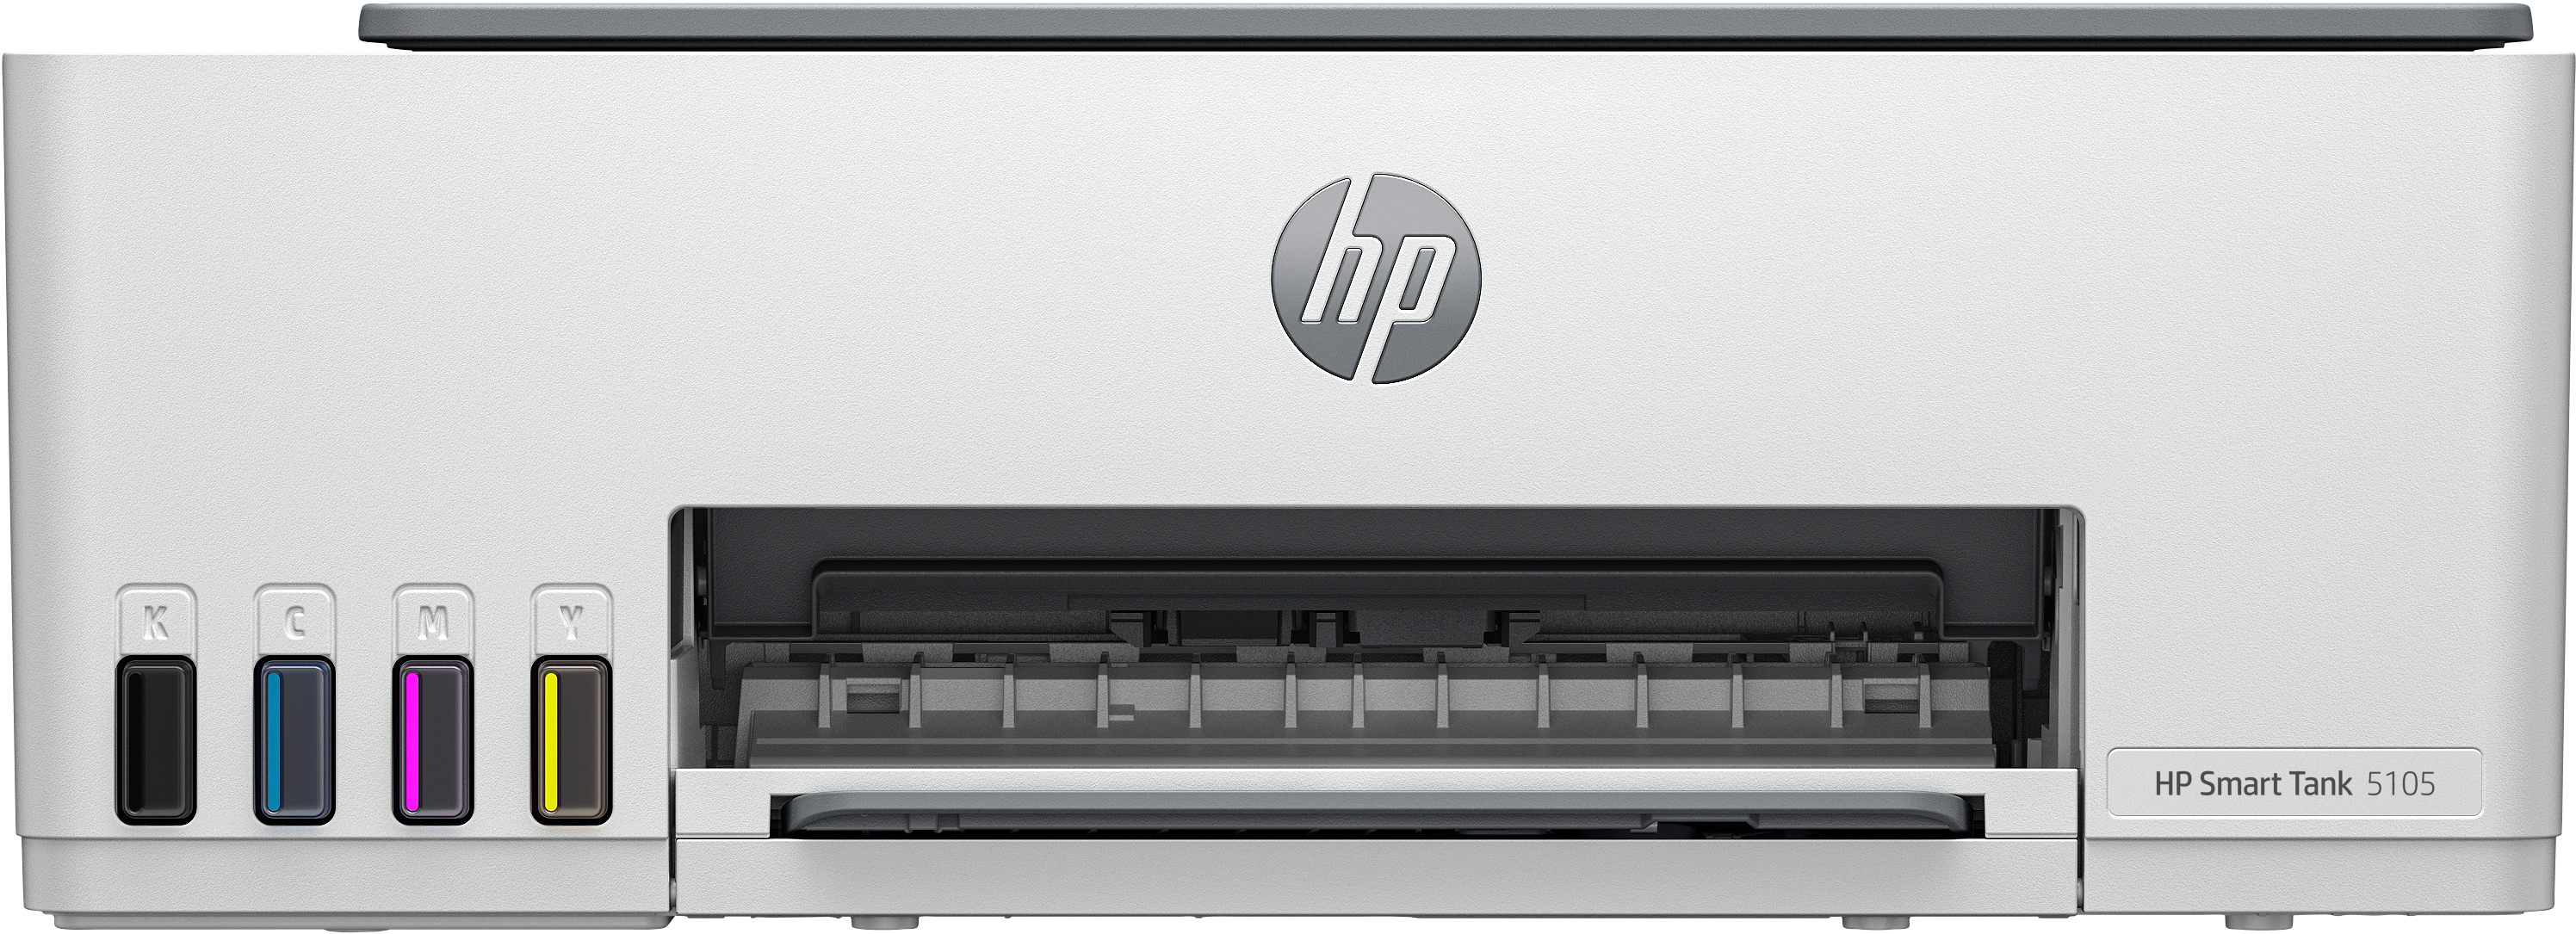 HP Smart Tank Imprimante Tout-en-un 5105, Couleur, Imprimante pour Maison et Bureau à domicile, Impression, copie, numérisation, Sans fil. Réservoir d’imprimante haute capacité. Impression depuis un téléphone ou une tablette. Numérisation vers PDF